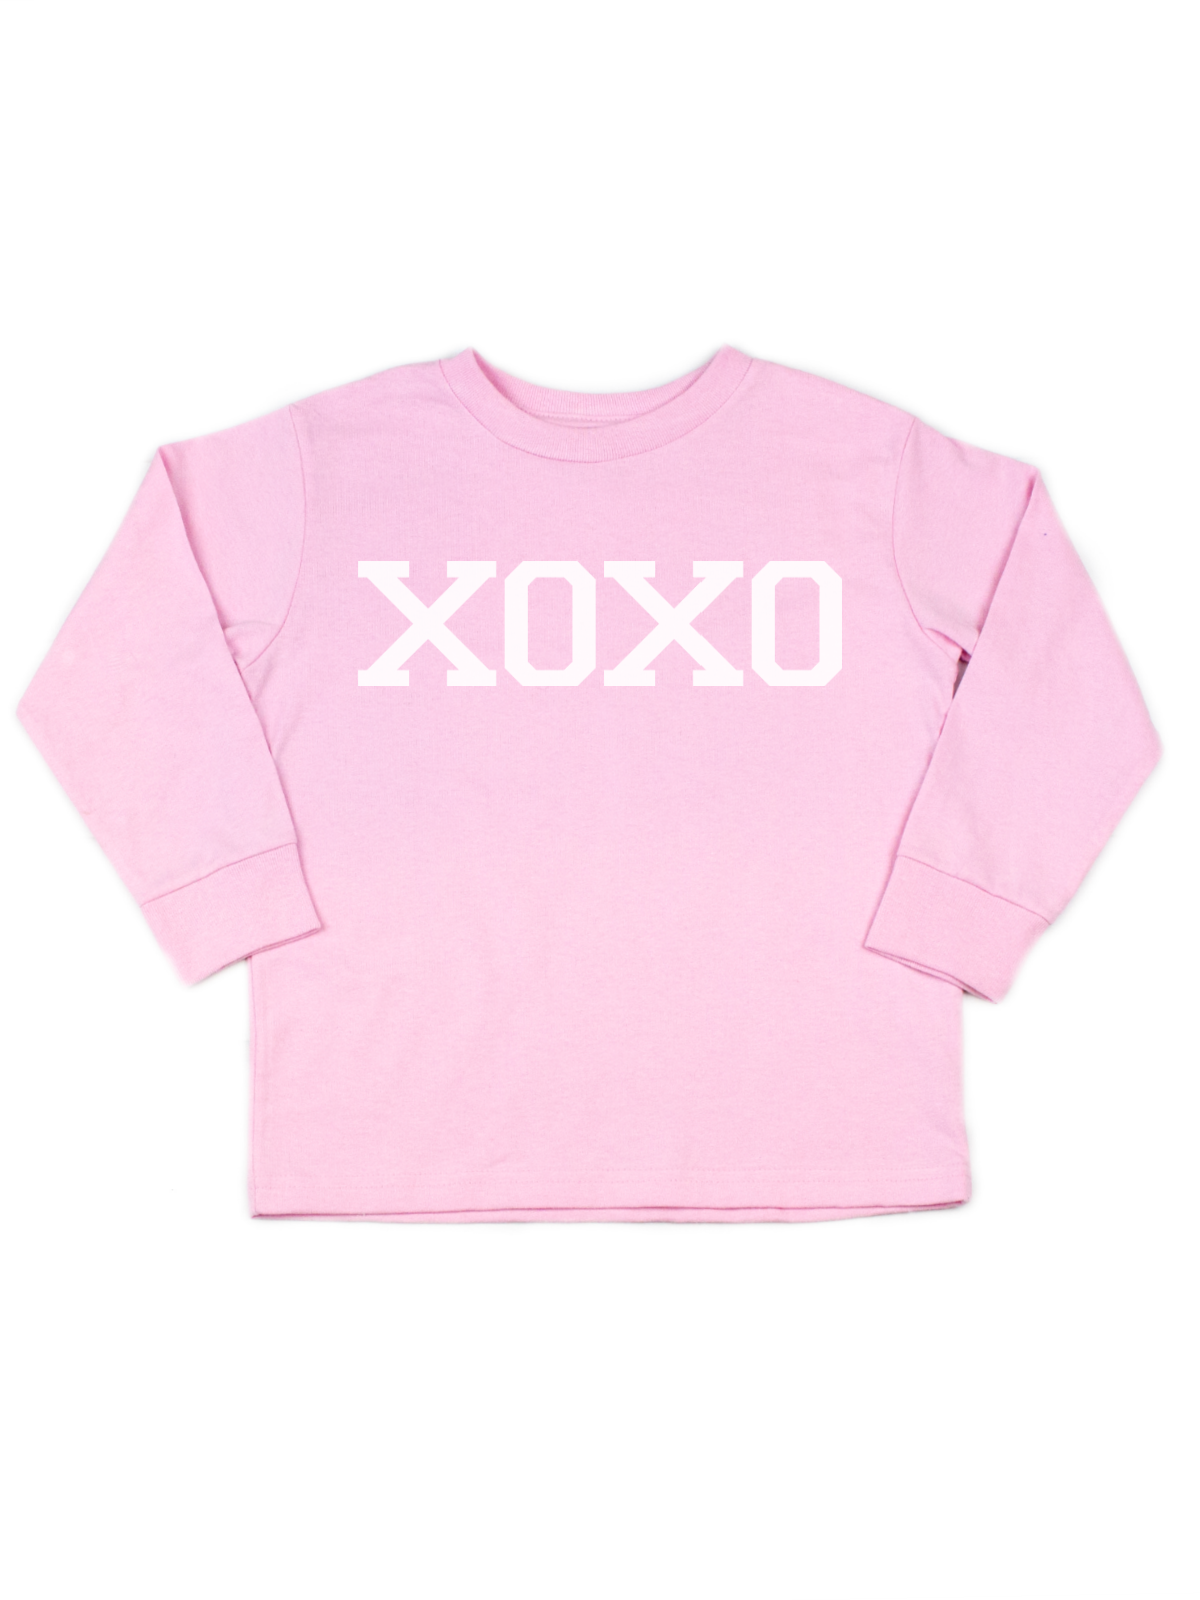 XOXO Girls Short Sleeve Valentine's Day Shirt